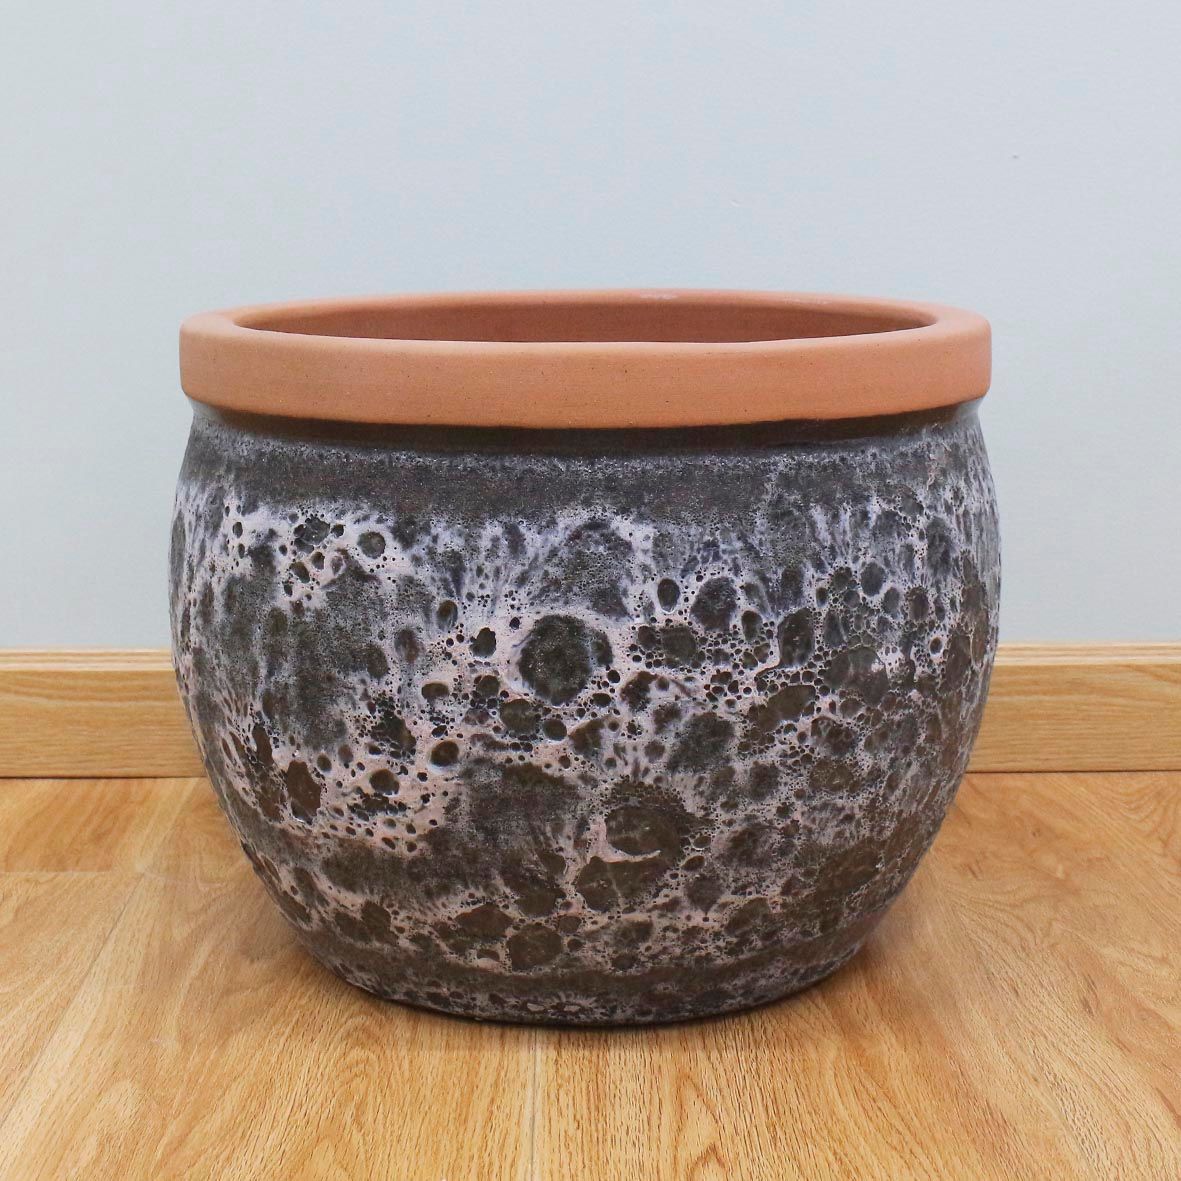  Round Ceramic Planter Pot 